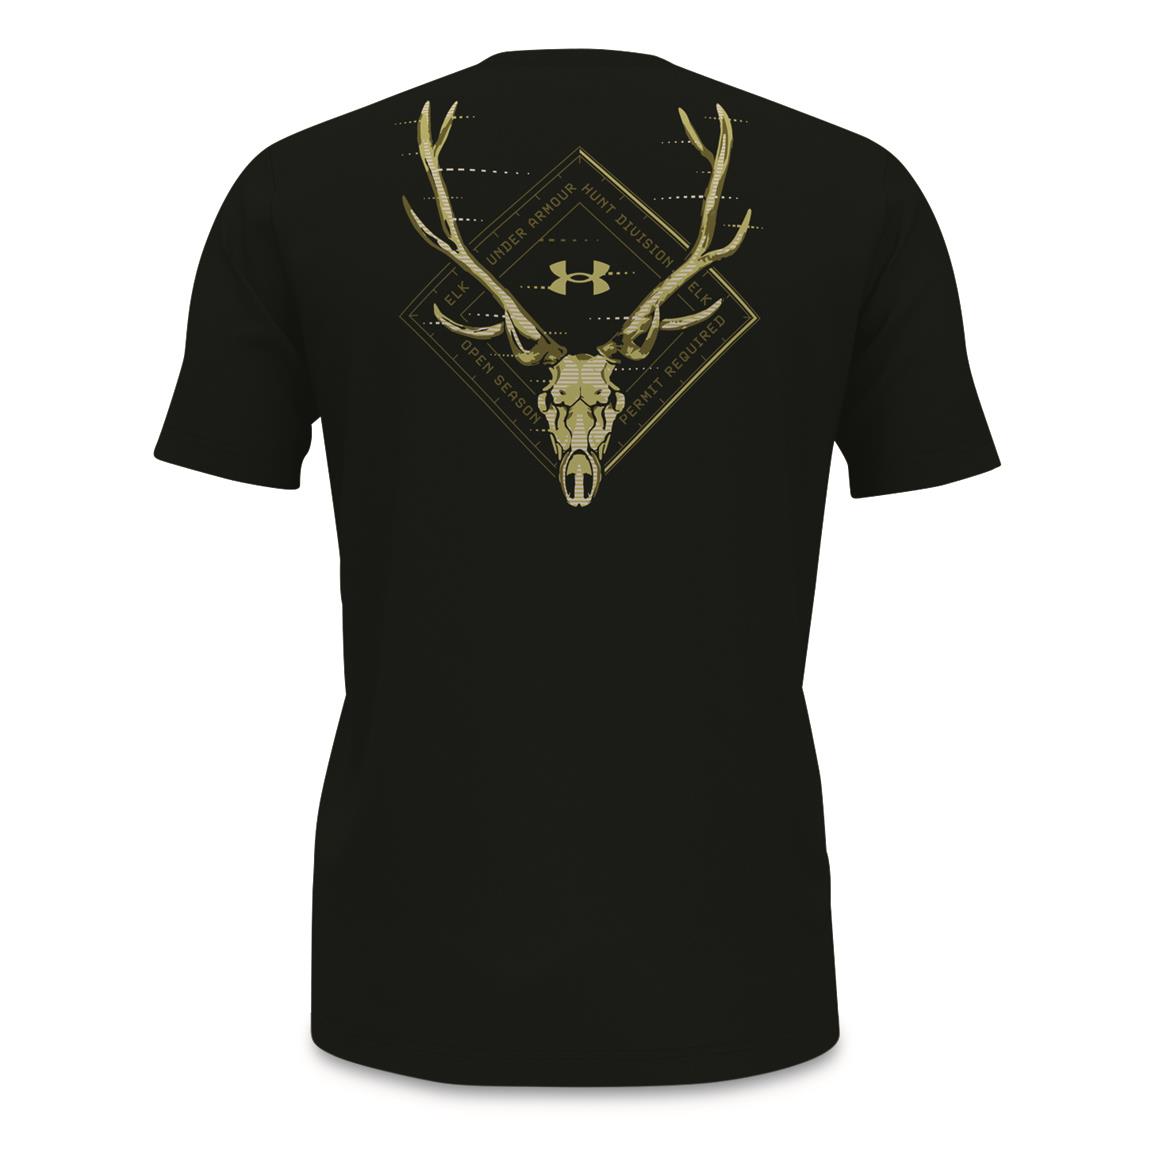 Under Armour Men's Hunt Elk Short Sleeve T-Shirt, Black/hushed Green